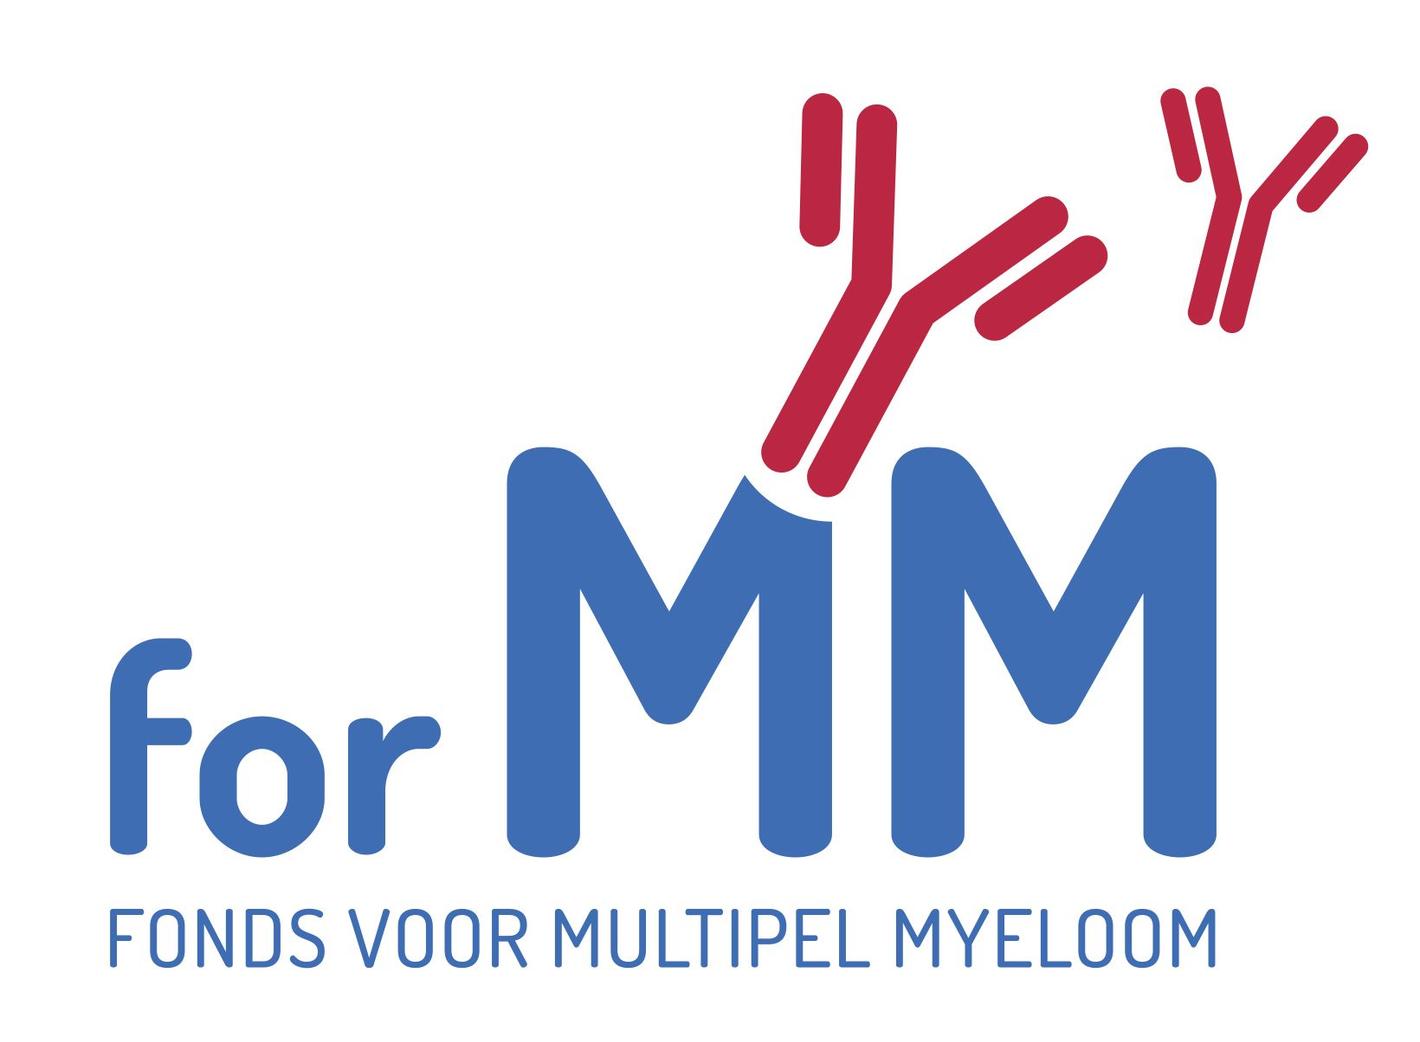 Fonds voor multipel myeloom